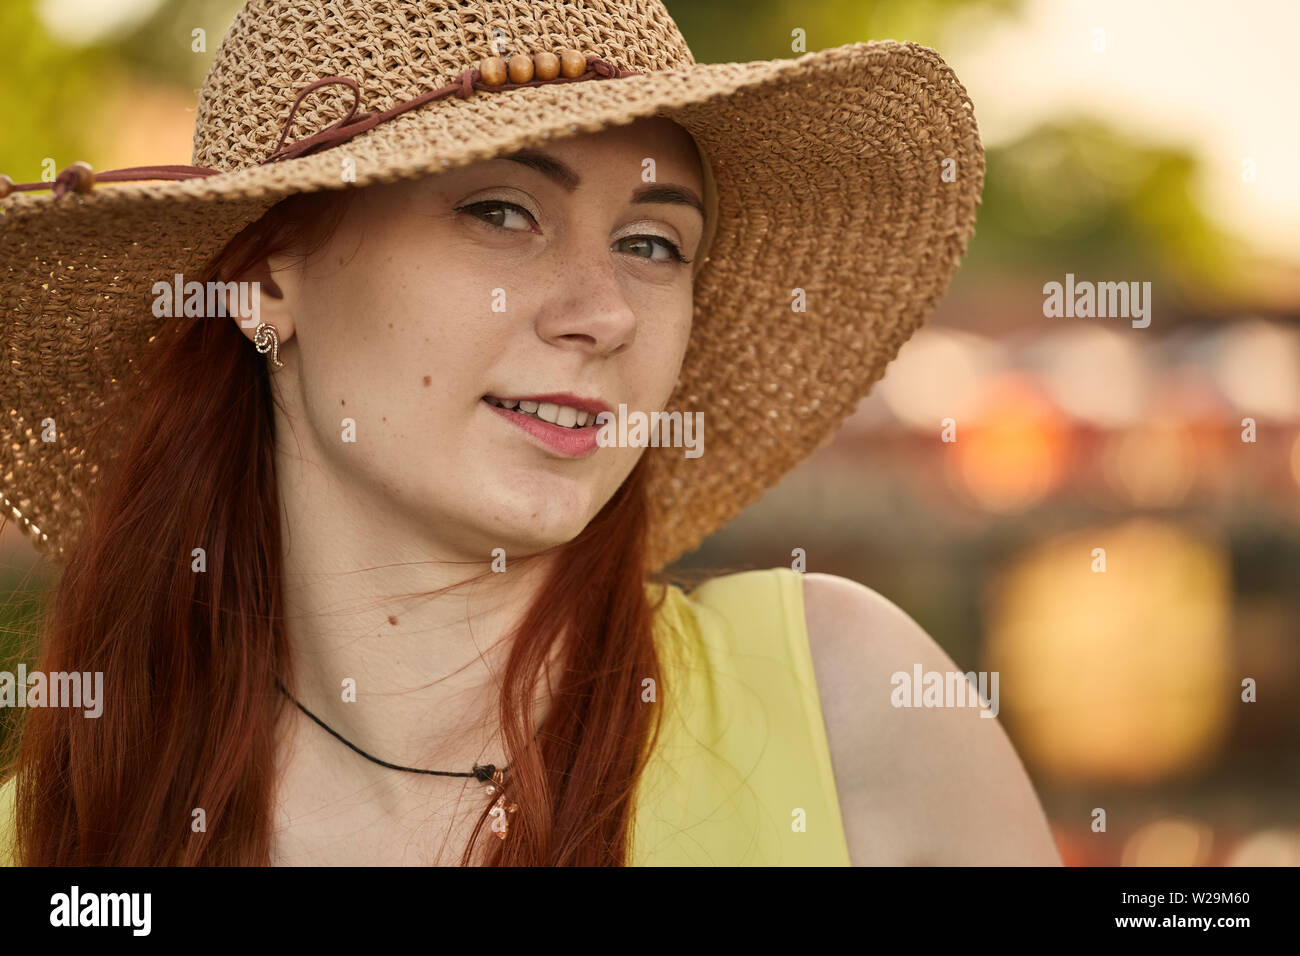 Jolie fille cheveux rouge à sun hat looking at camera, smiling, tonique libre Banque D'Images